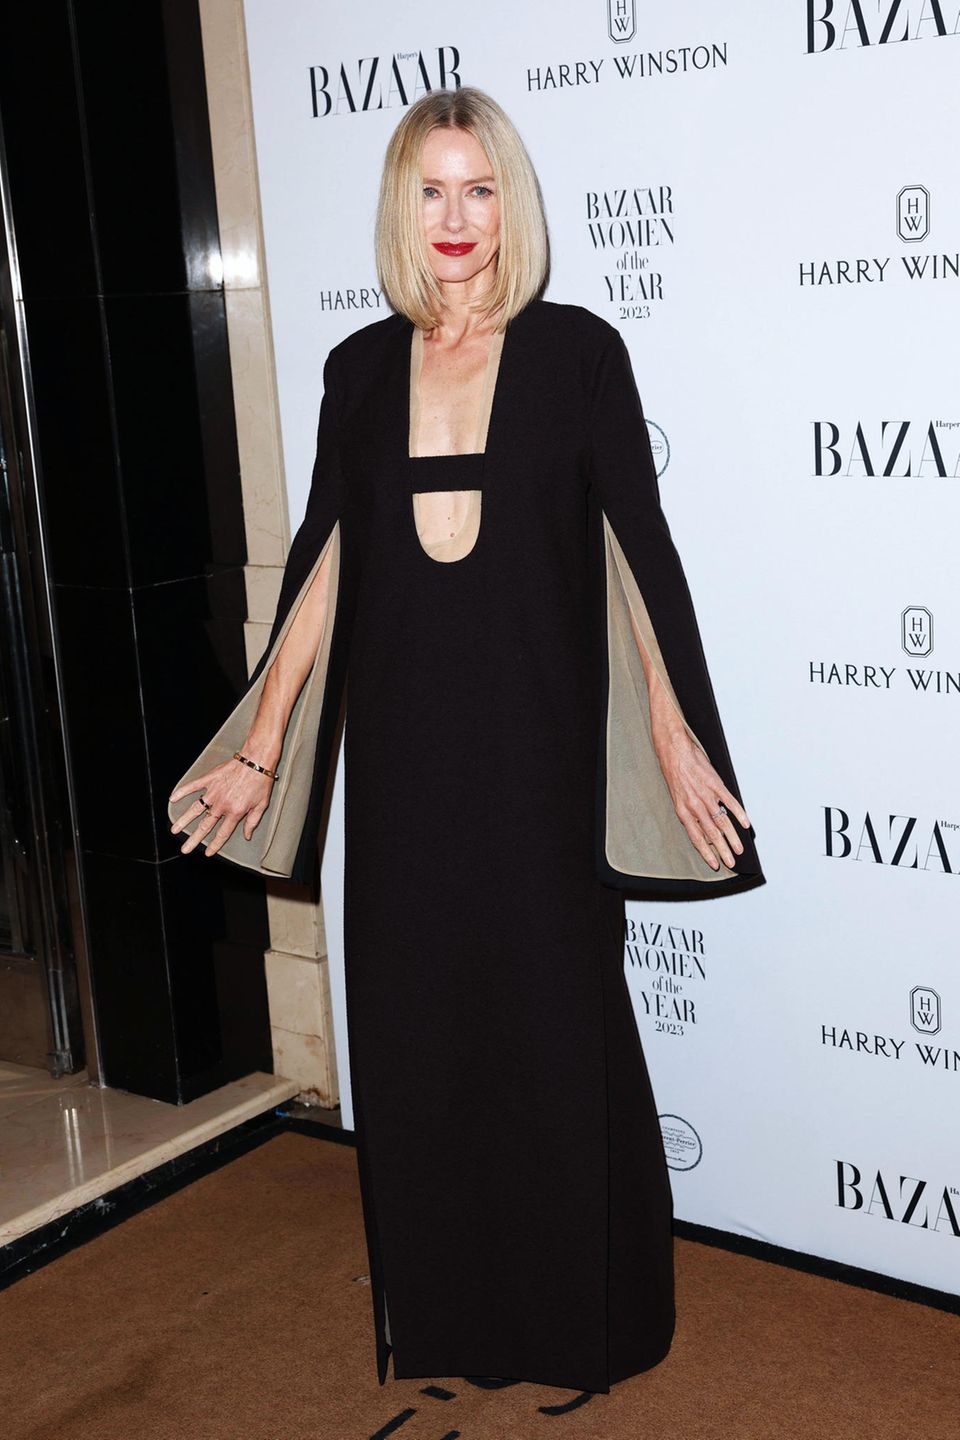 Eleganz trifft Extravaganz: Naomi Watts präsentiert sich in London im schwarzen, bodenlangen Kleid von Tory Burch. Hingucker sind die offenen Ärmel und der tiefe Steg-Ausschnitt.